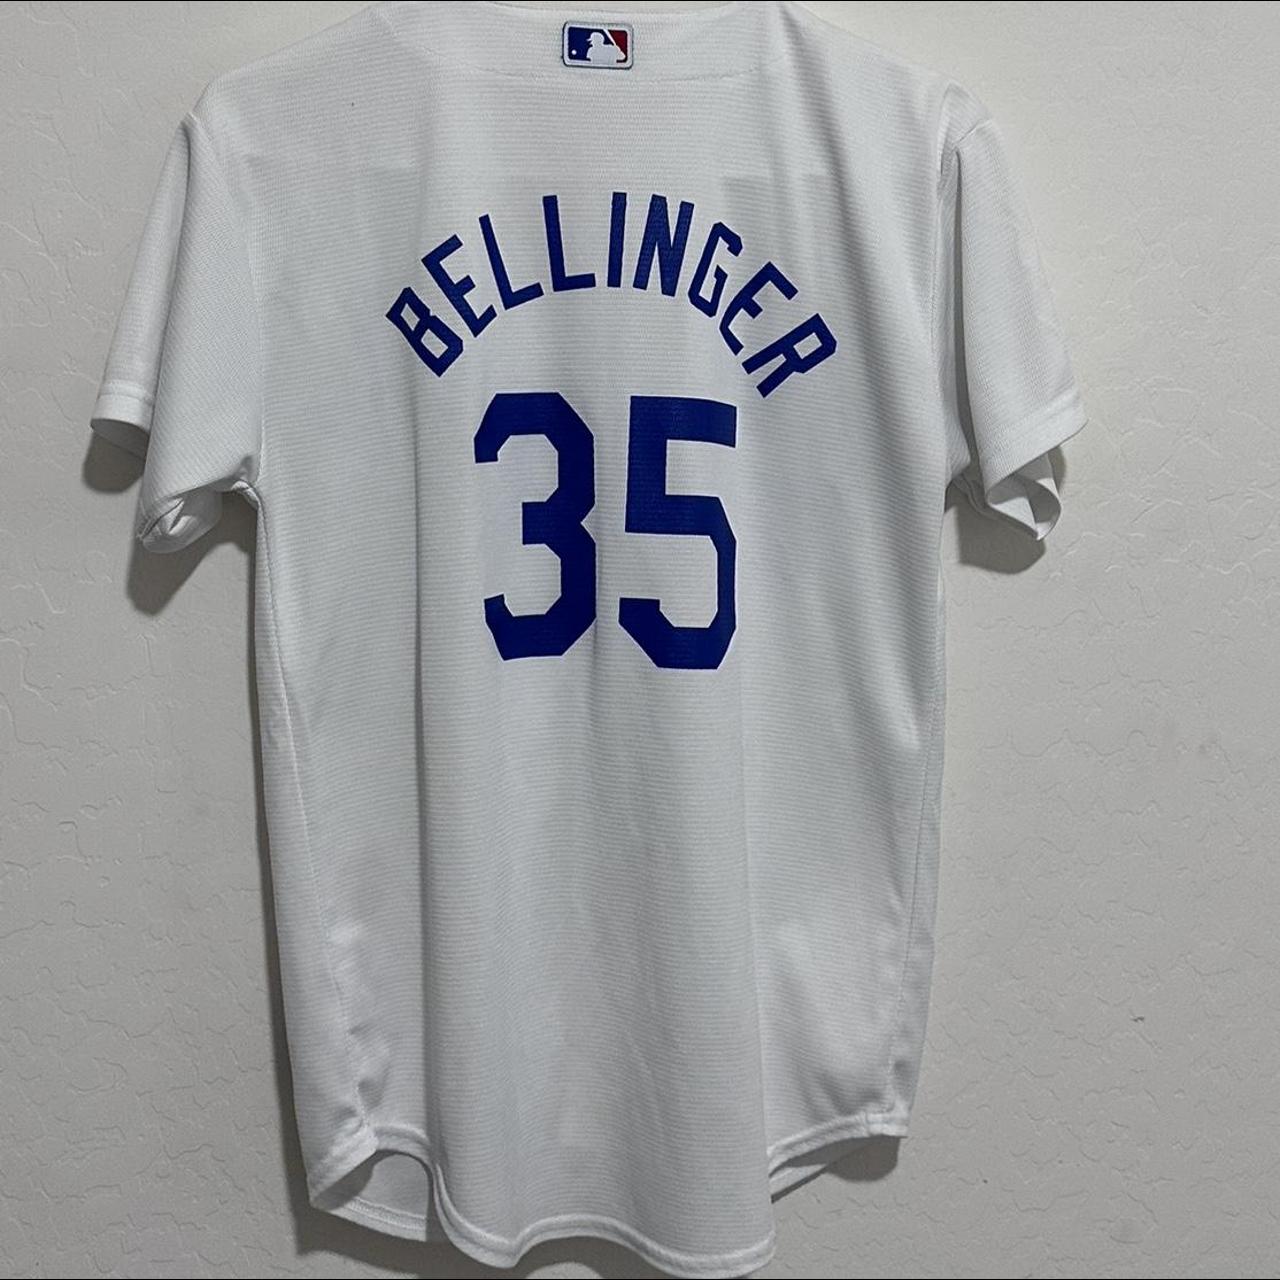 Dodgers #35 Bellinger jersey - worn once - no - Depop